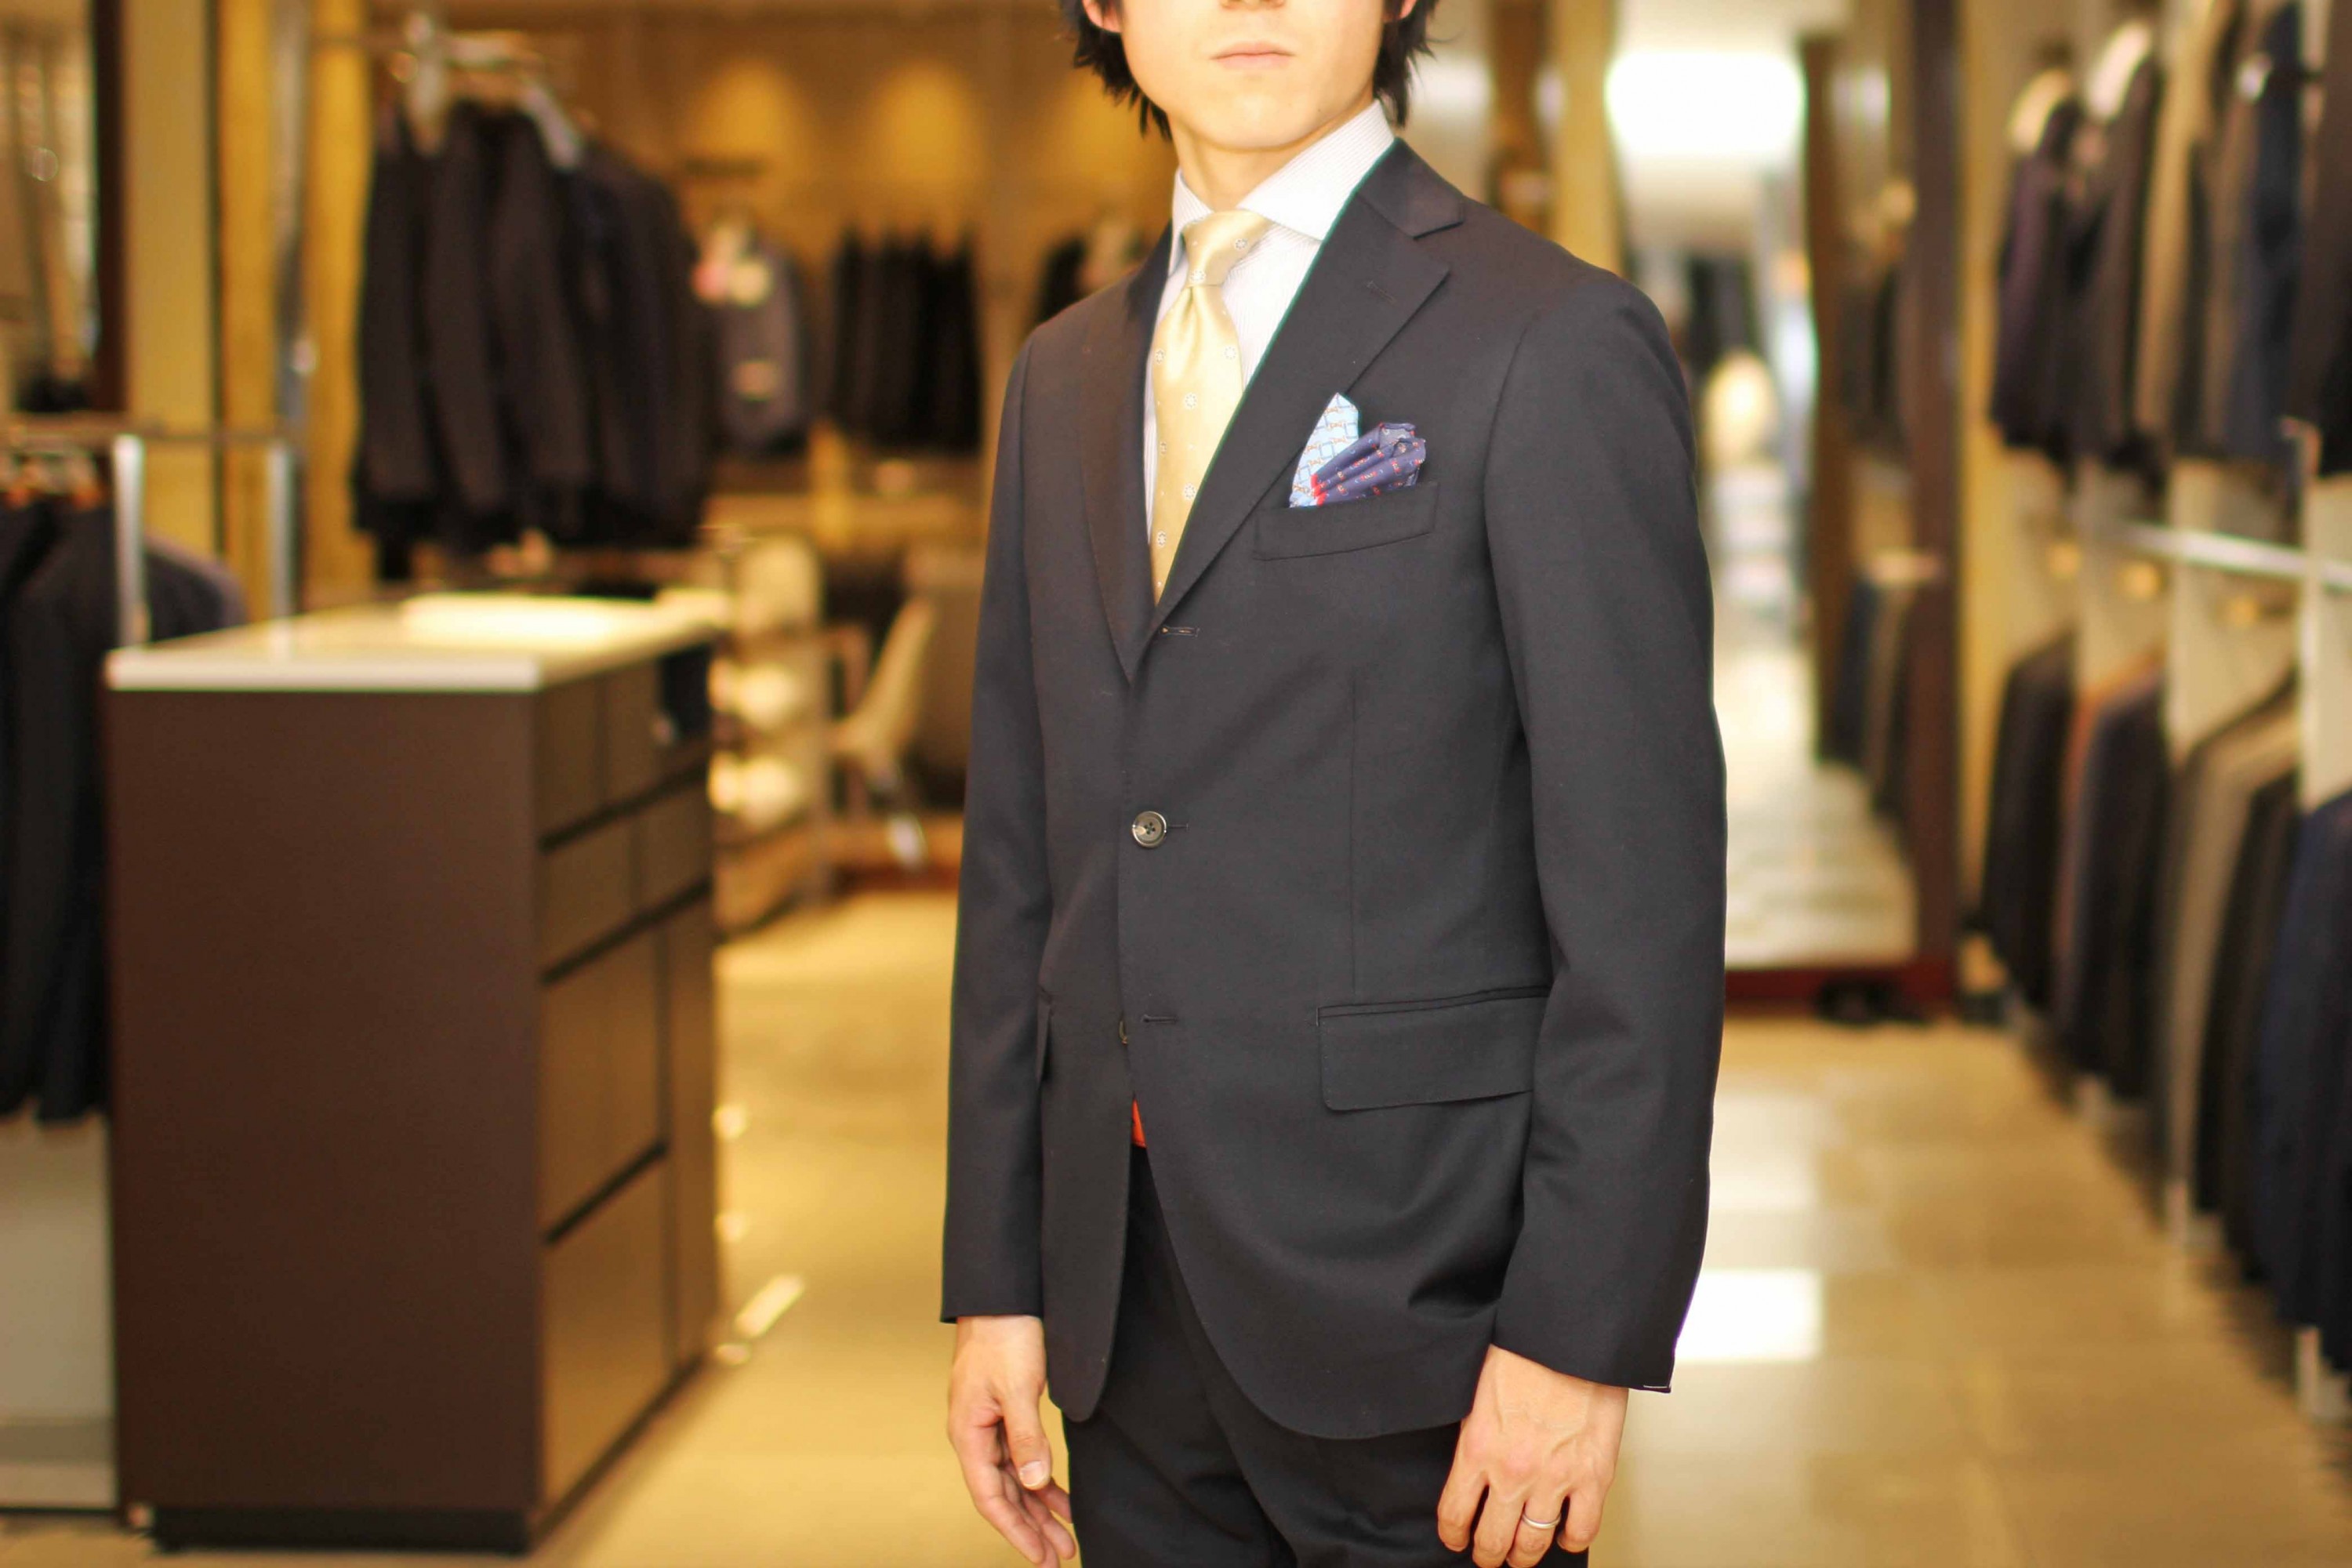 【特集】目立たないが、品が良い。通年着られる「最強の普通のスーツ」が誕生 伊勢丹新宿店メンズ館 公式メディア